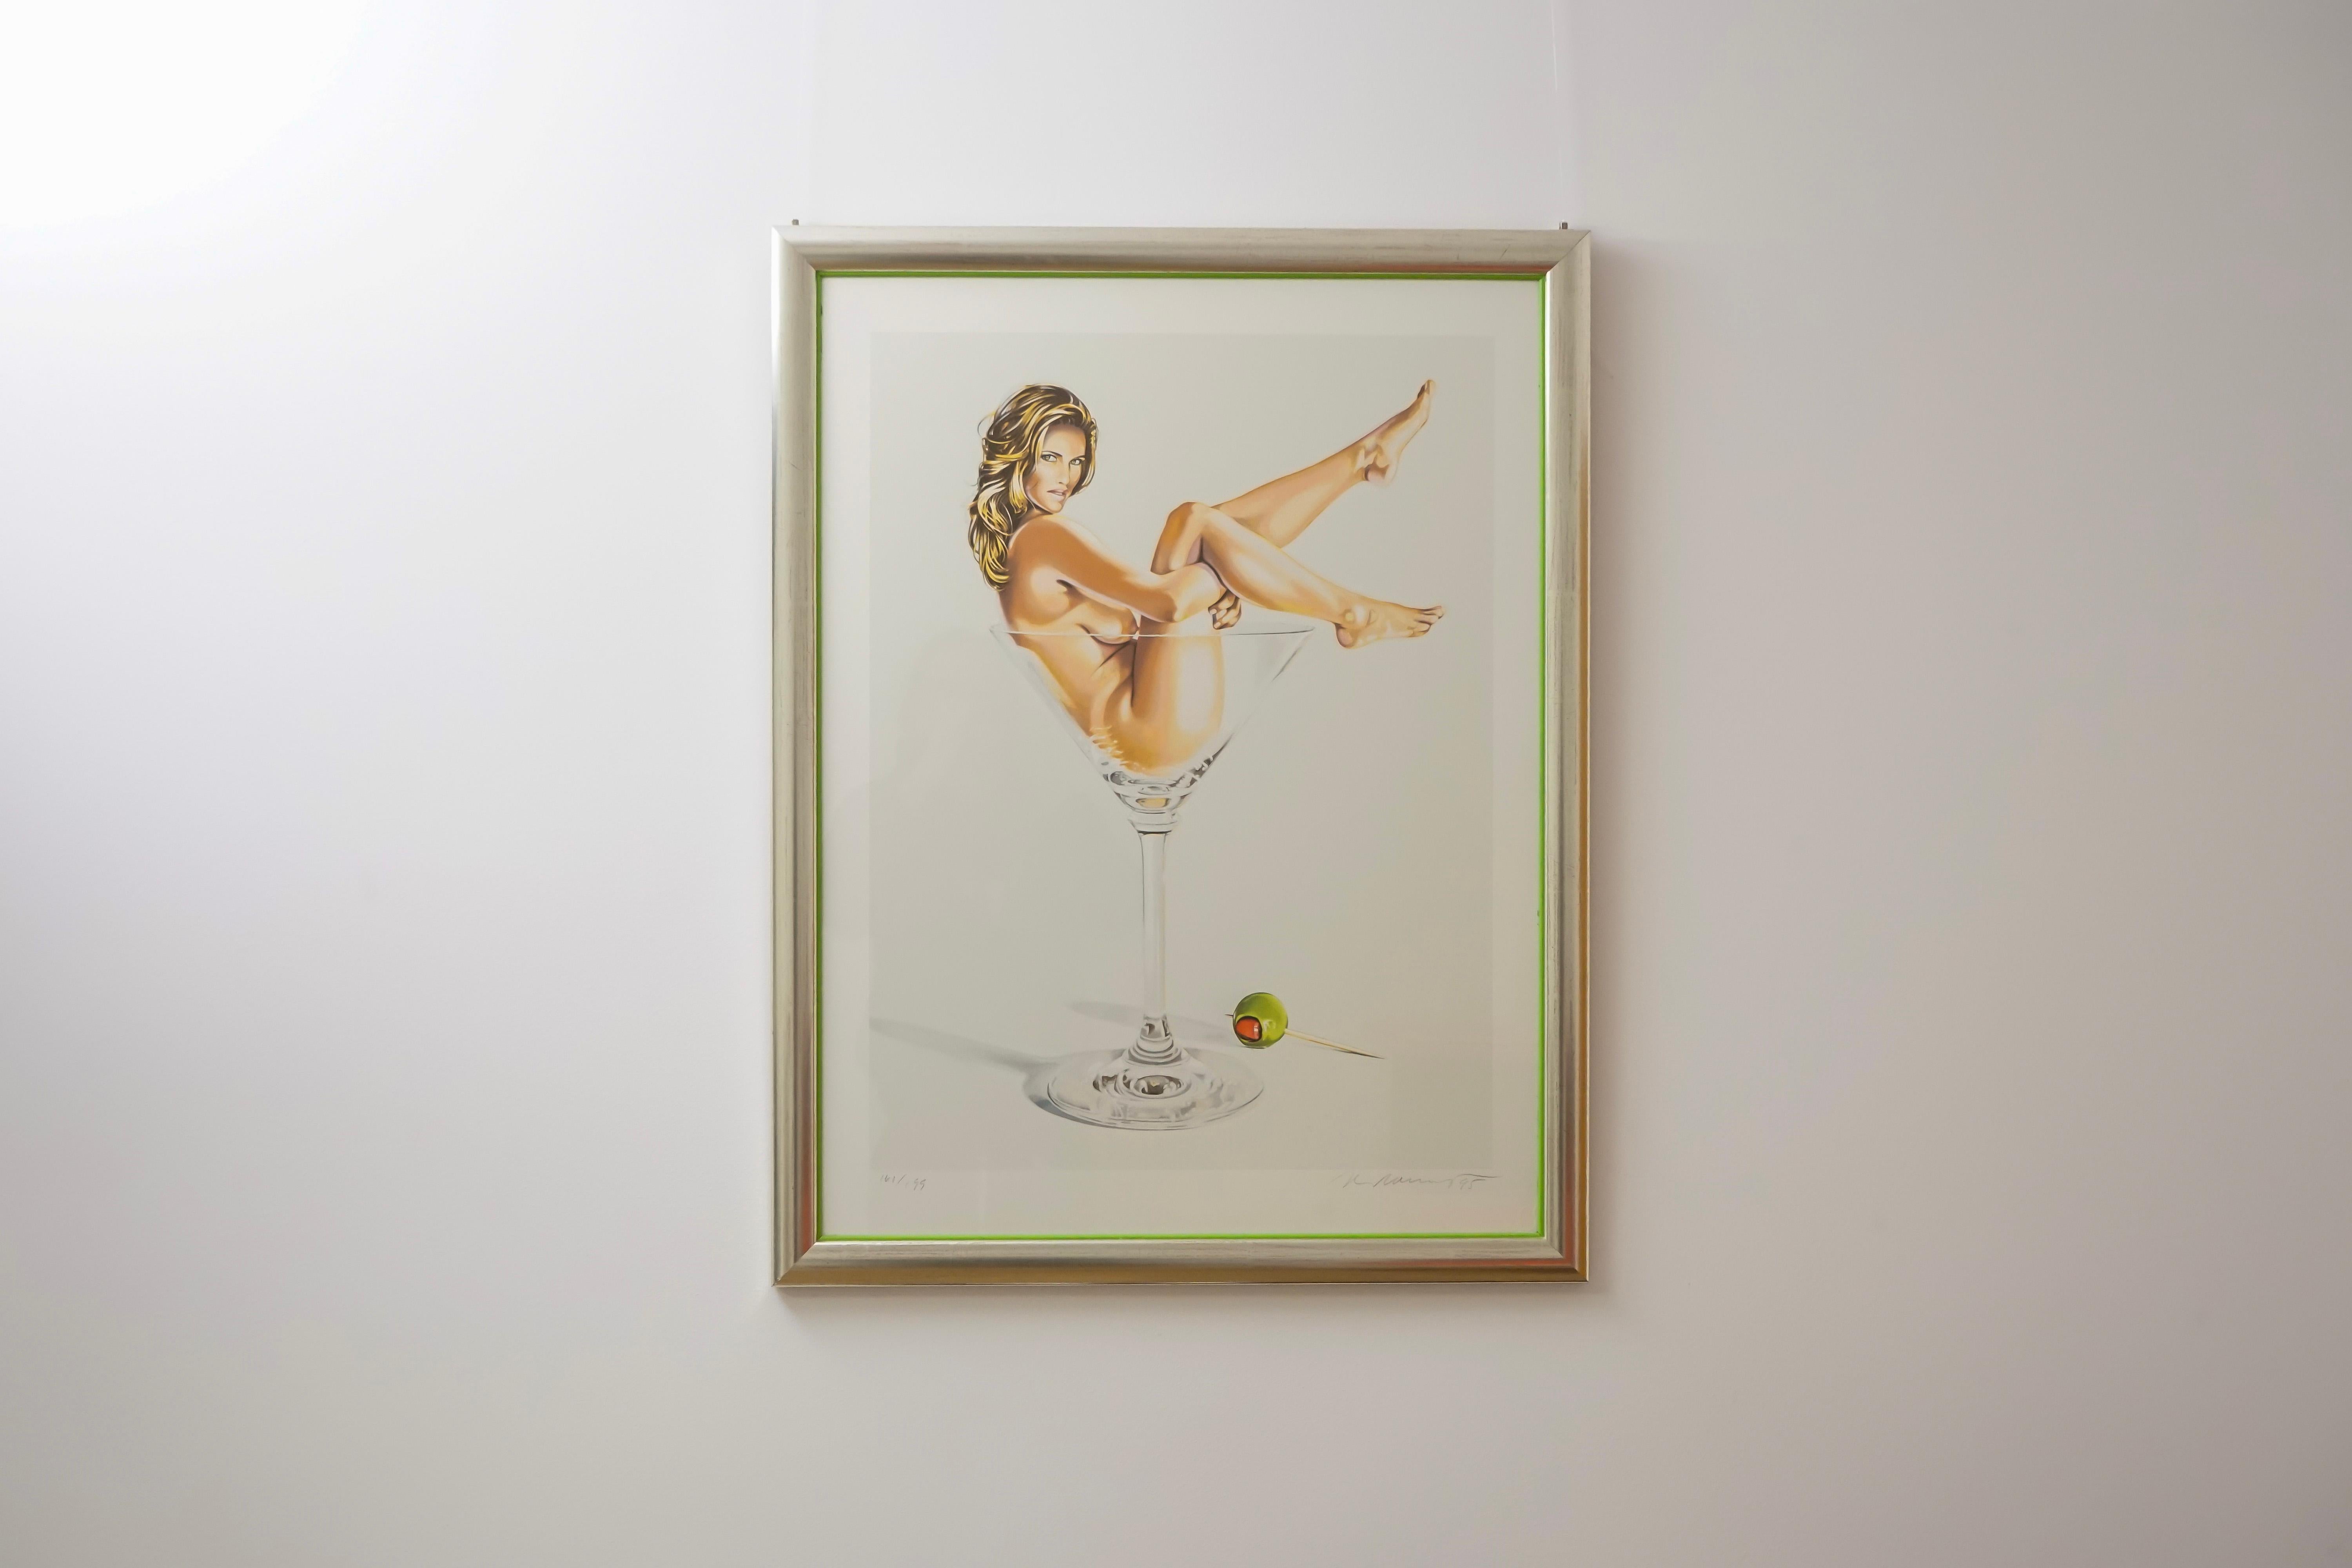 Artistics : Mel Ramos (1935 - 2018)
Titre : Martini Miss 
Signé : en bas à droite au crayon
Daté : en bas à droite au crayon (19)95
N° / Édition : 161 de 199
Dimensions avec cadre : 64 x 82 x 2,3 cm
Technique : Lithographie en couleurs